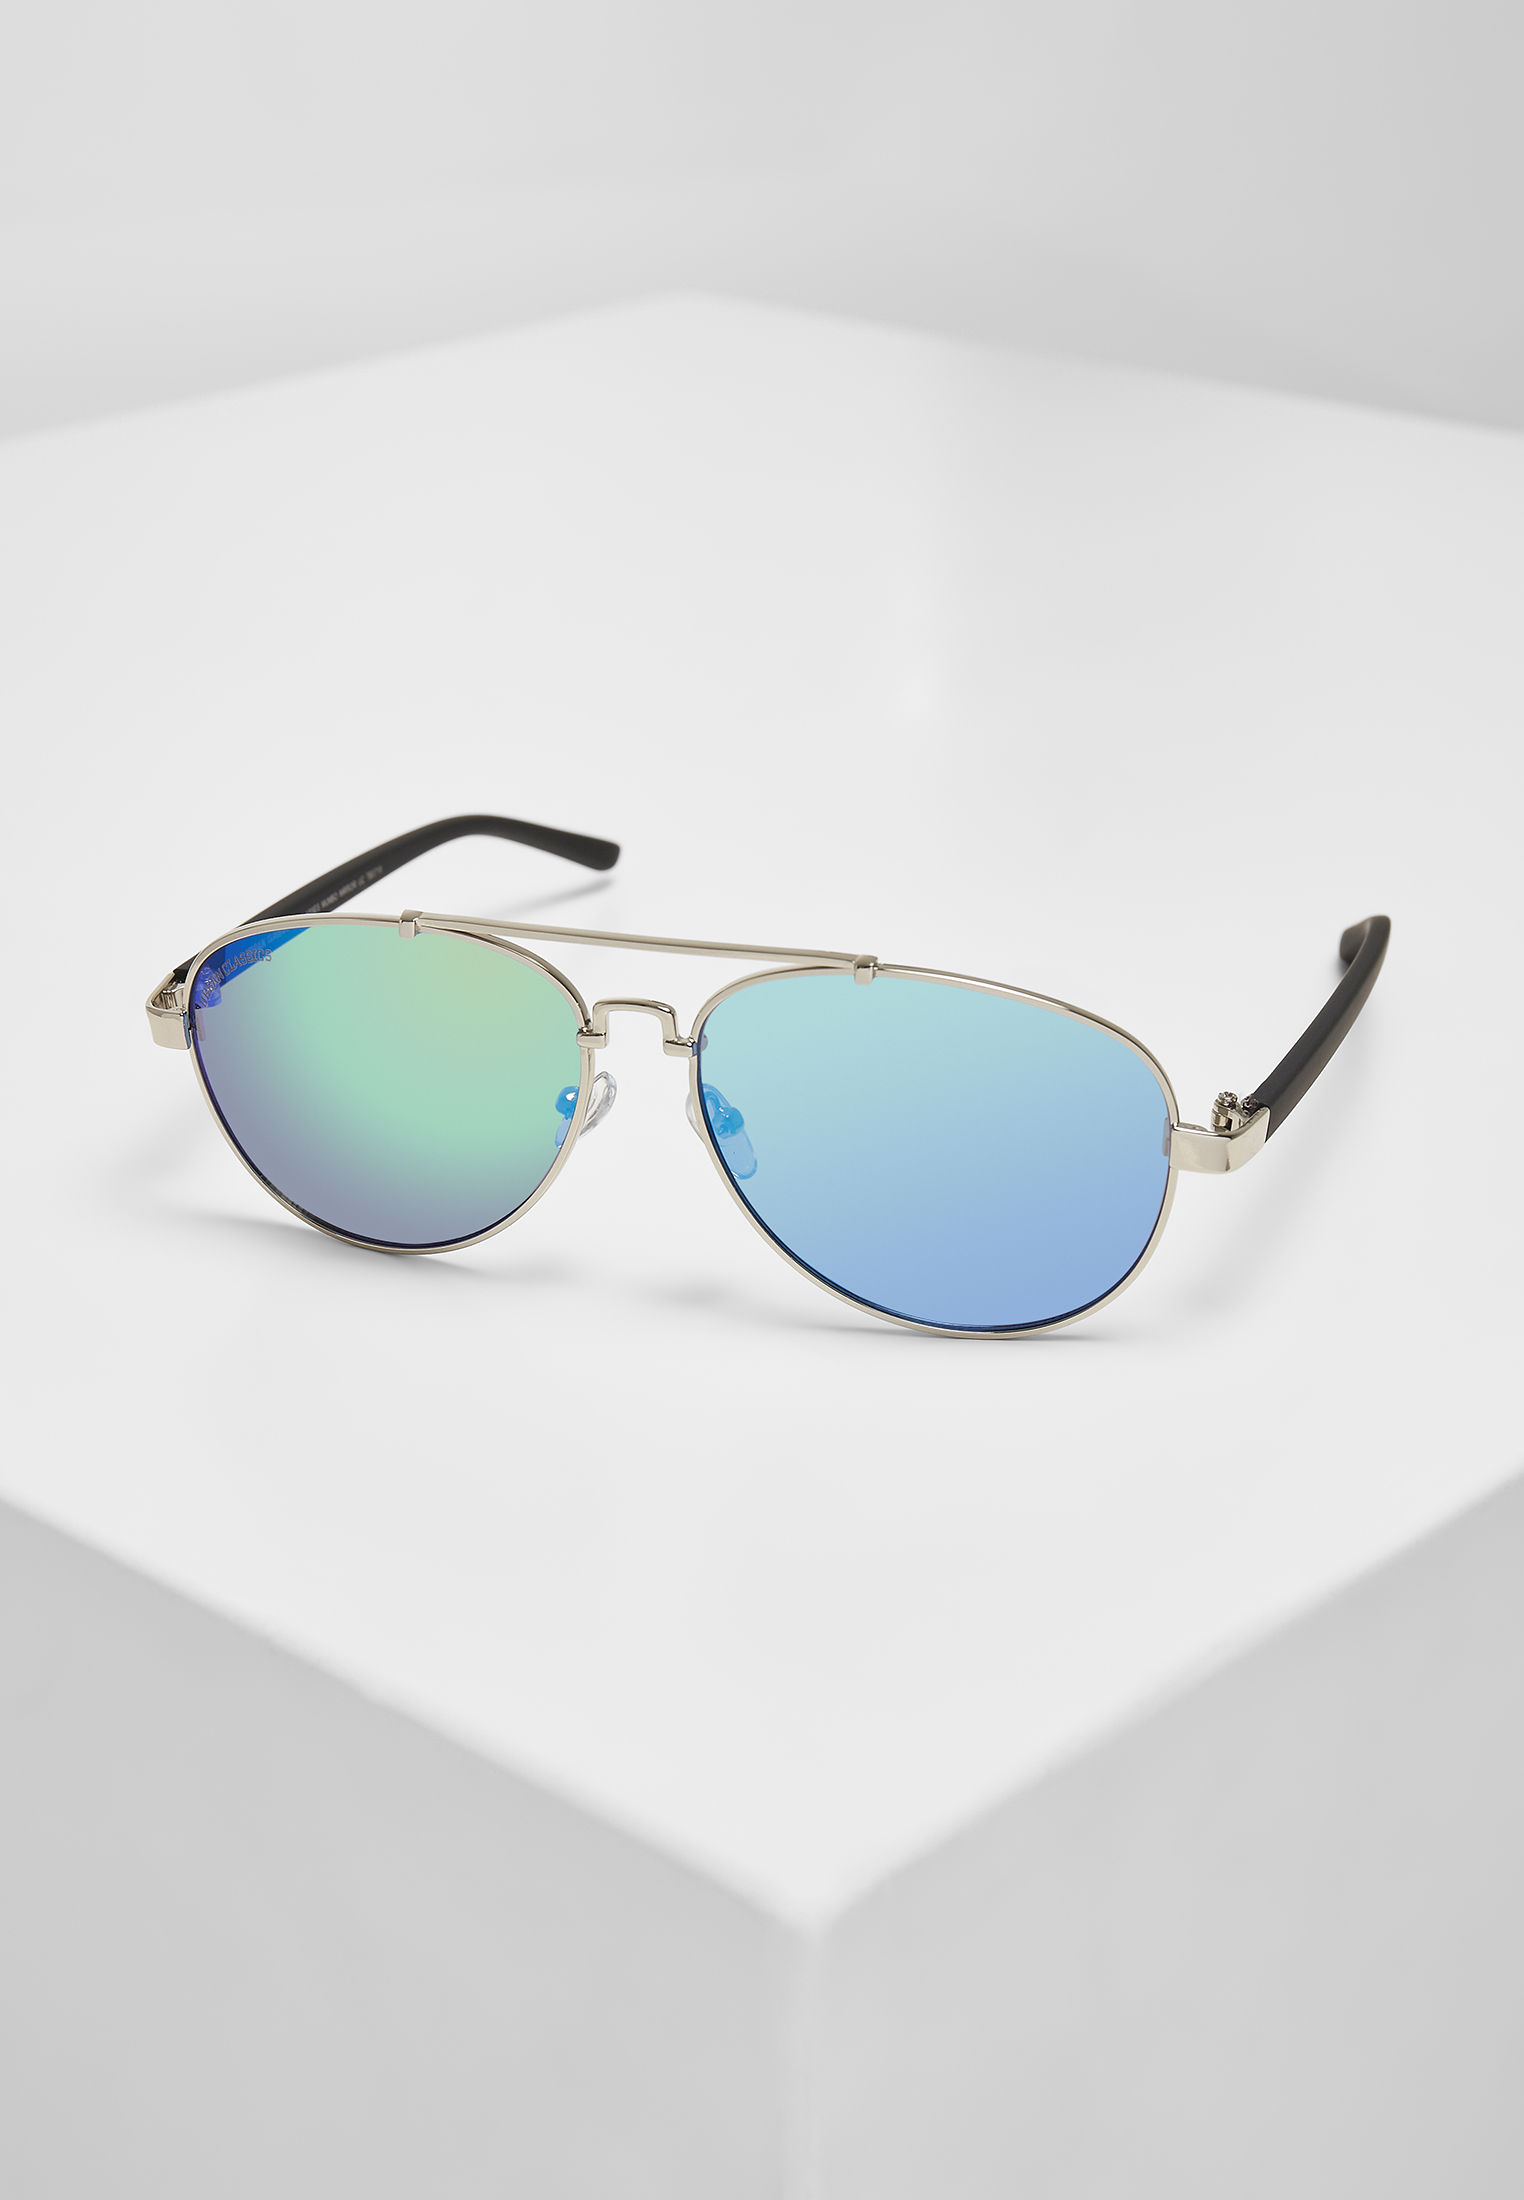 Sonnenbrillen Sunglasses Mumbo Mirror UC in Farbe silver/blue